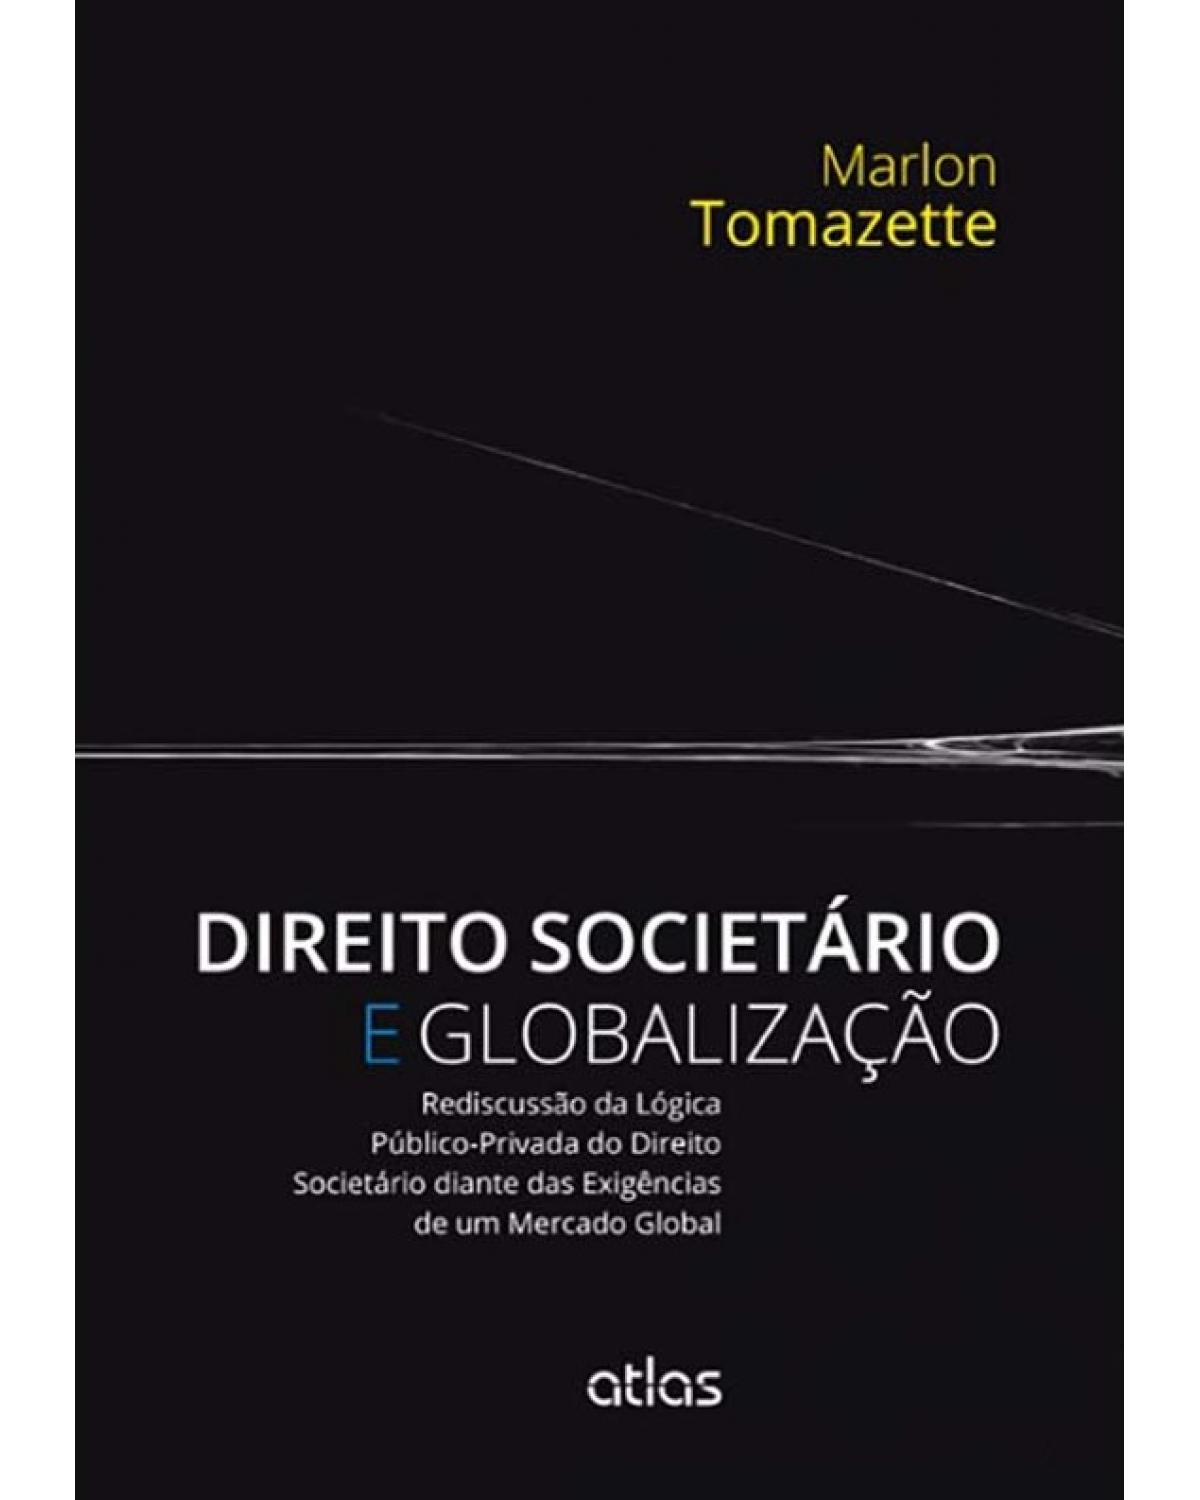 Direito societário e globalização - Rediscussão da lógica público-privada do direito societário diante das exigências de um mercado global - 1ª Edição | 2014